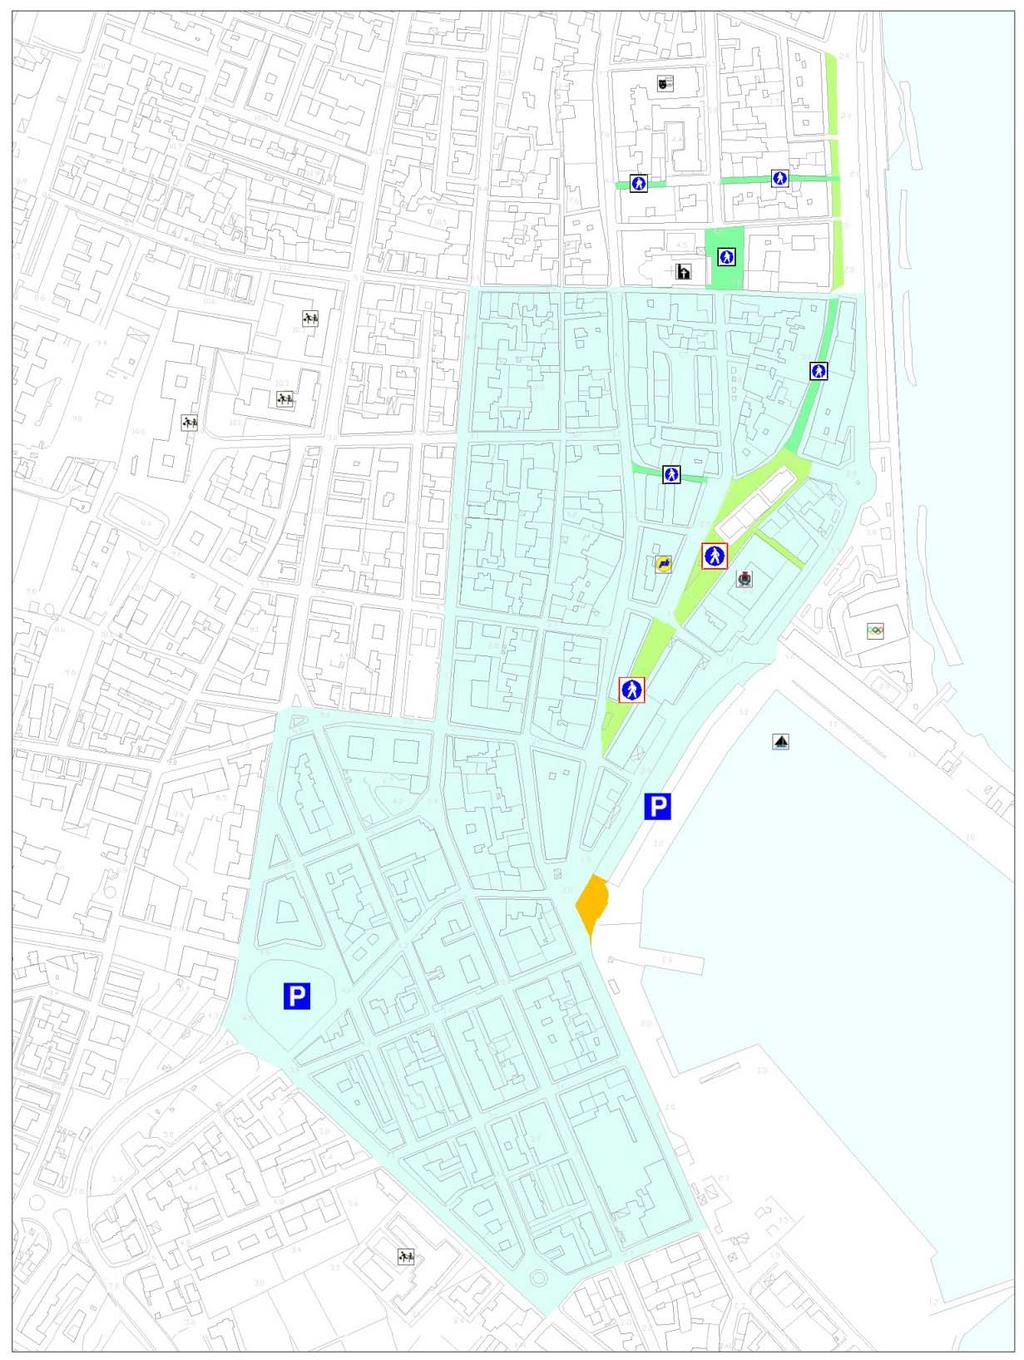 L intervento definito S2, già previsto nell'area centrale di Milazzo viene recepito dal PGTU, consiste nella realizzazione di un parcheggio multipiano in via Impallomeni a prevalente